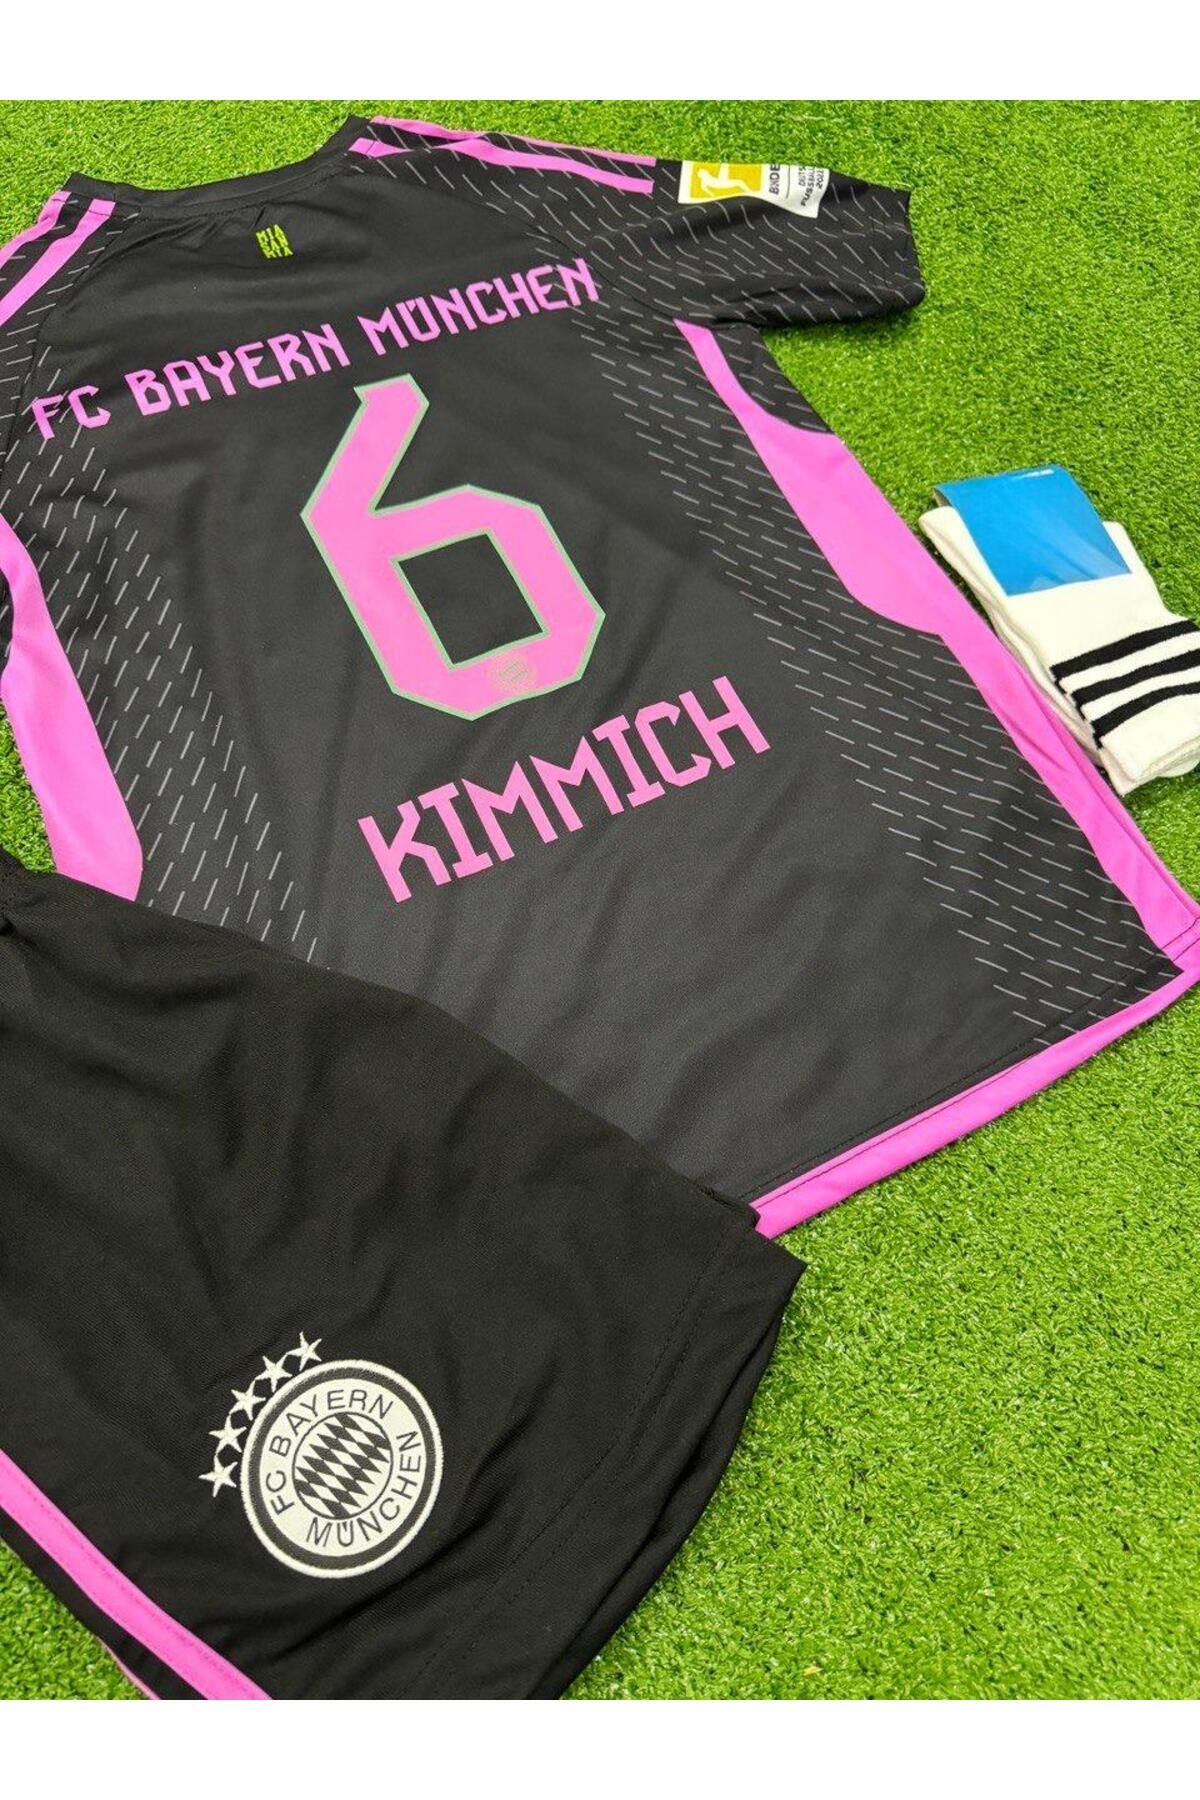 Alaturka Mix Bayern Münih Kimmich Yeni Sezon Çocuk Futbol Forması 3lü Takım Forma Şort Çorap